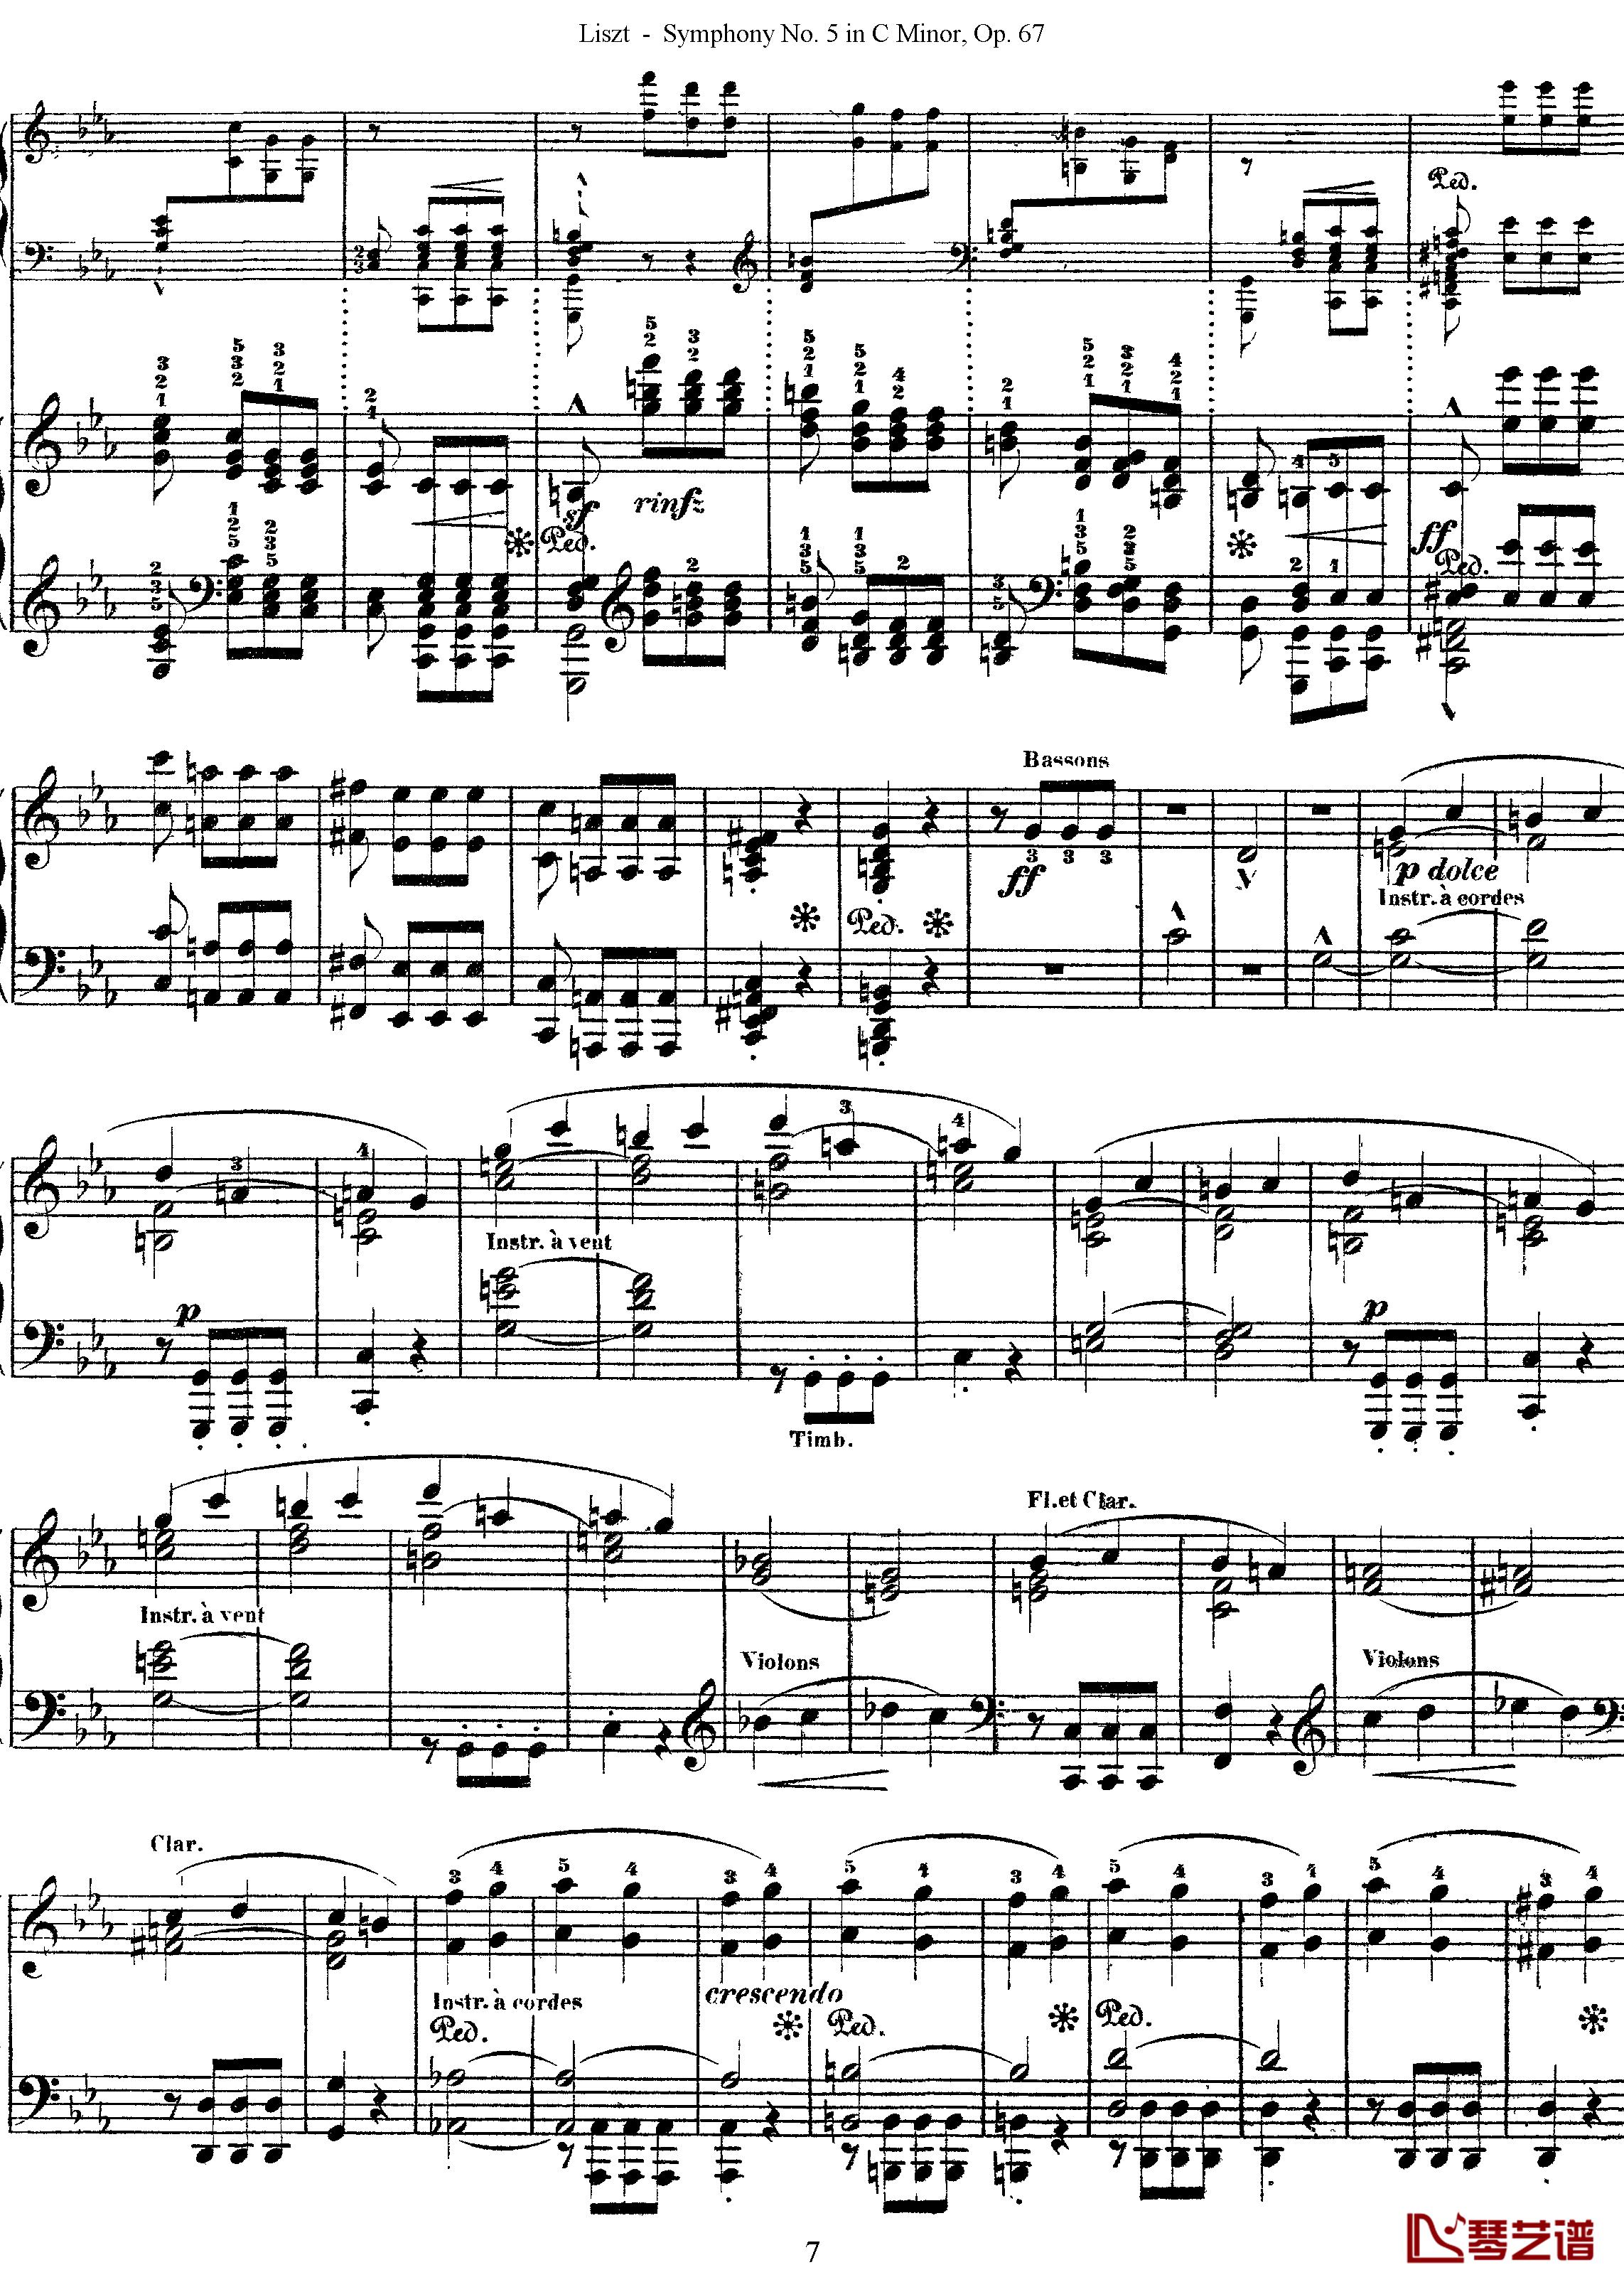 第五交响乐的钢琴曲钢琴谱-李斯特-李斯特改编自贝多芬7